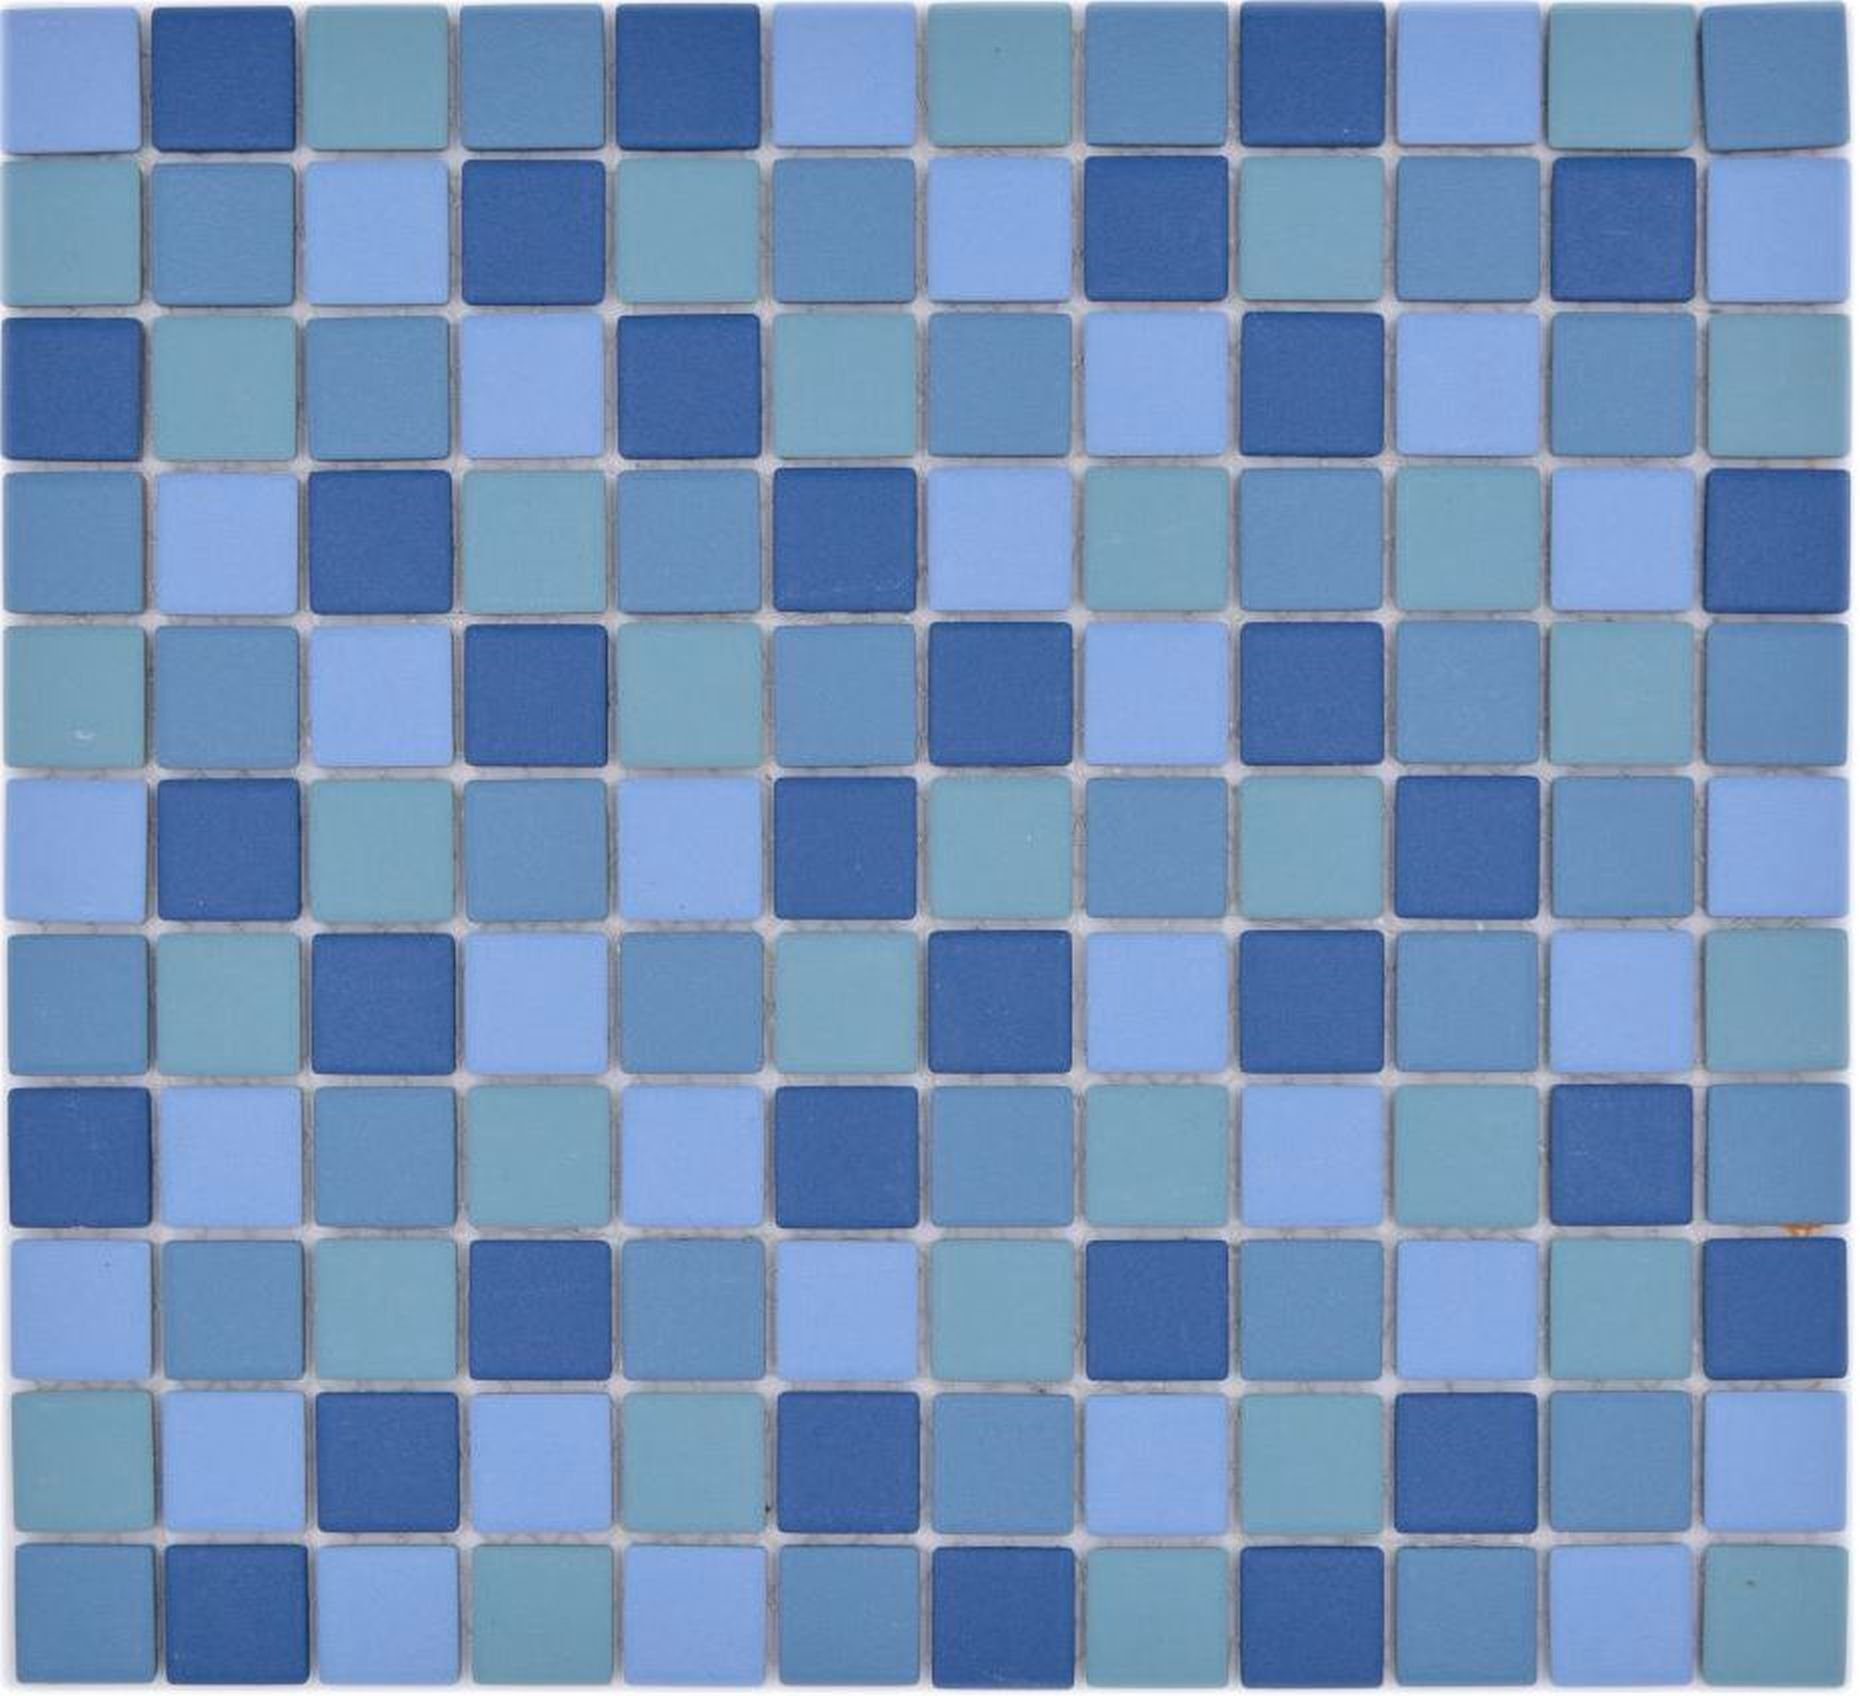 blau 10 Mosani Quadratisches / Keramikmosaik matt Matten Mosaikfliesen Mosaikfliesen mix